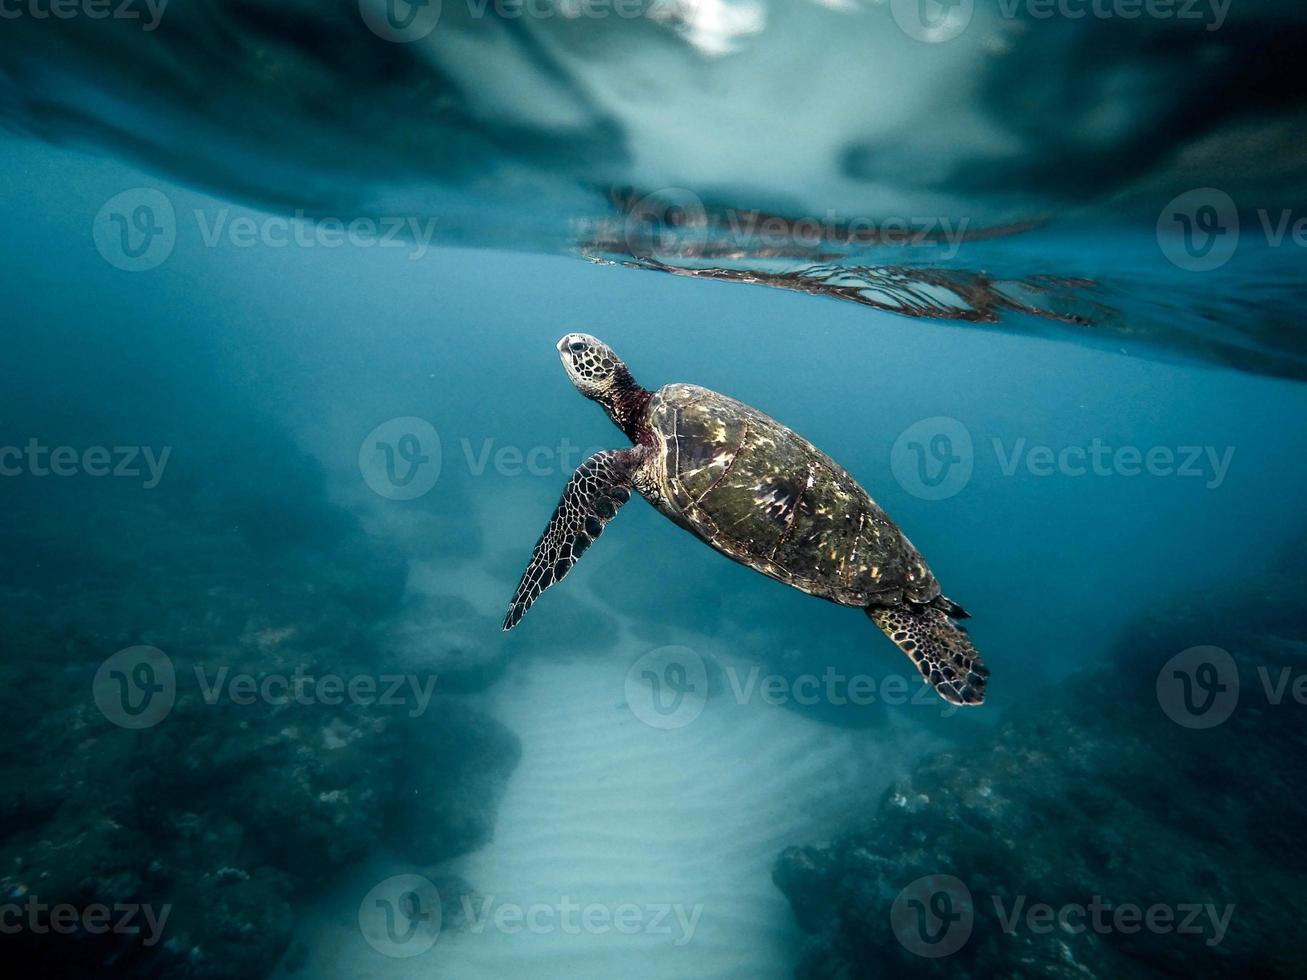 tortuga marina nadando en el océano foto